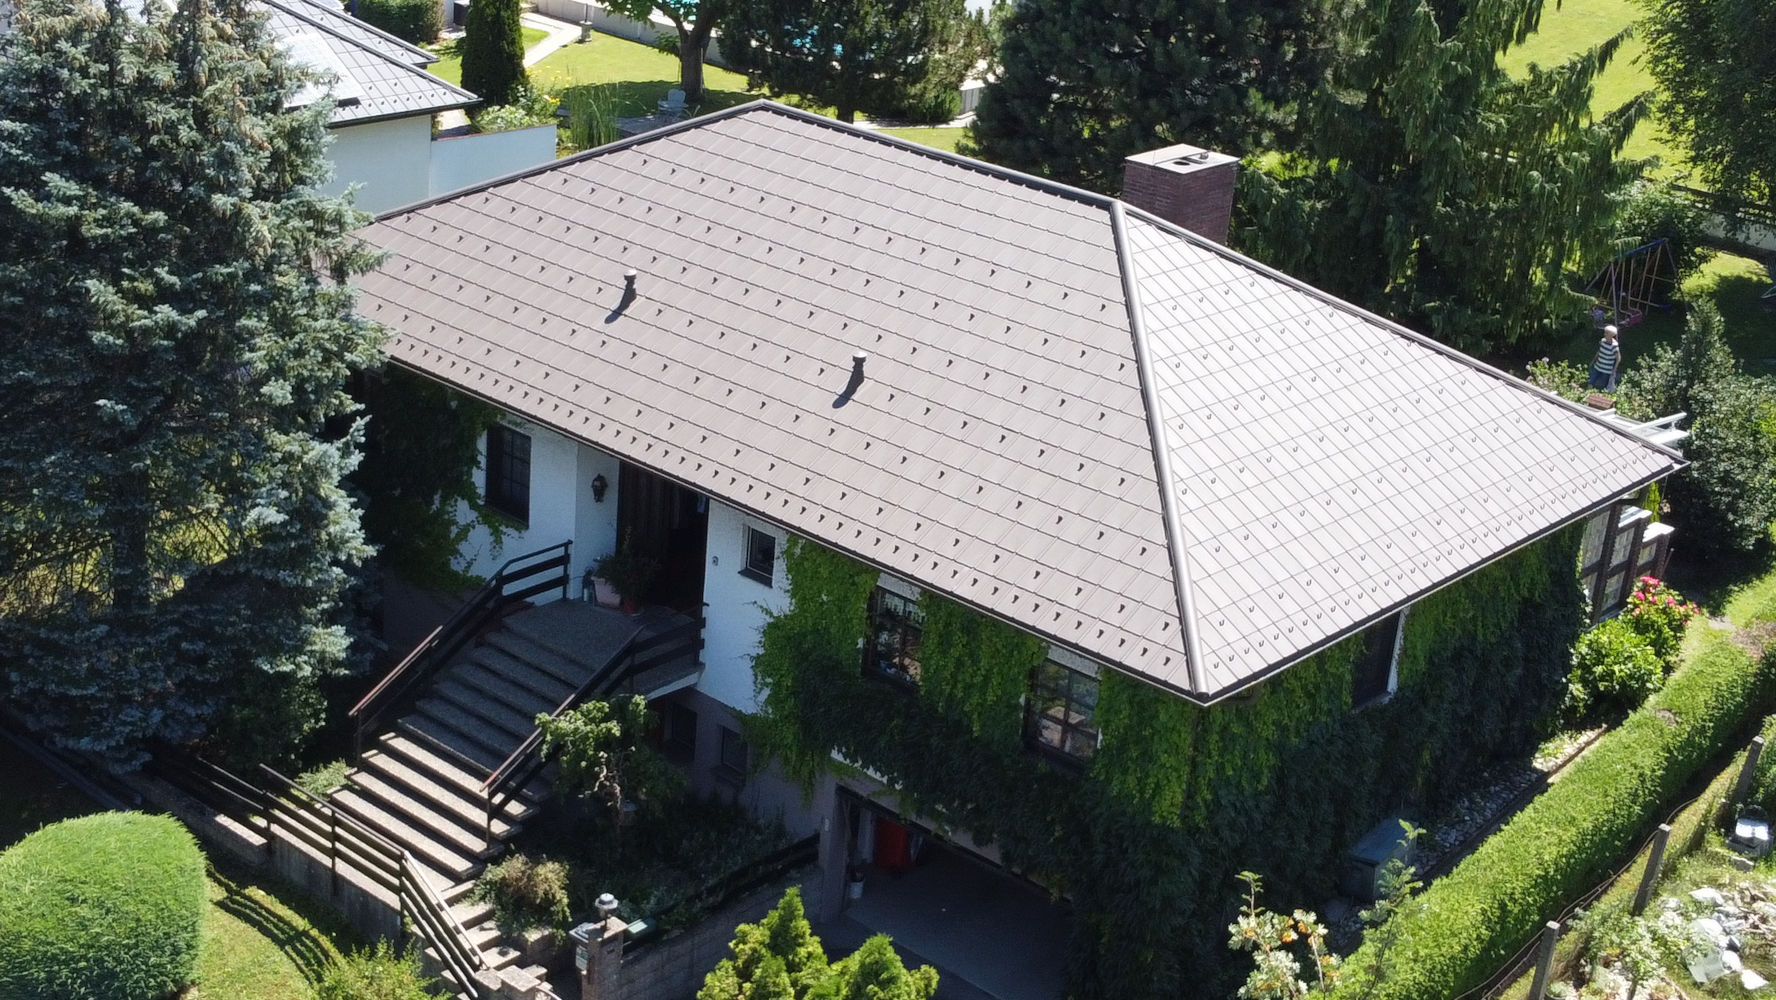 Schönes altes Haus mit gut gepflegtem Dach